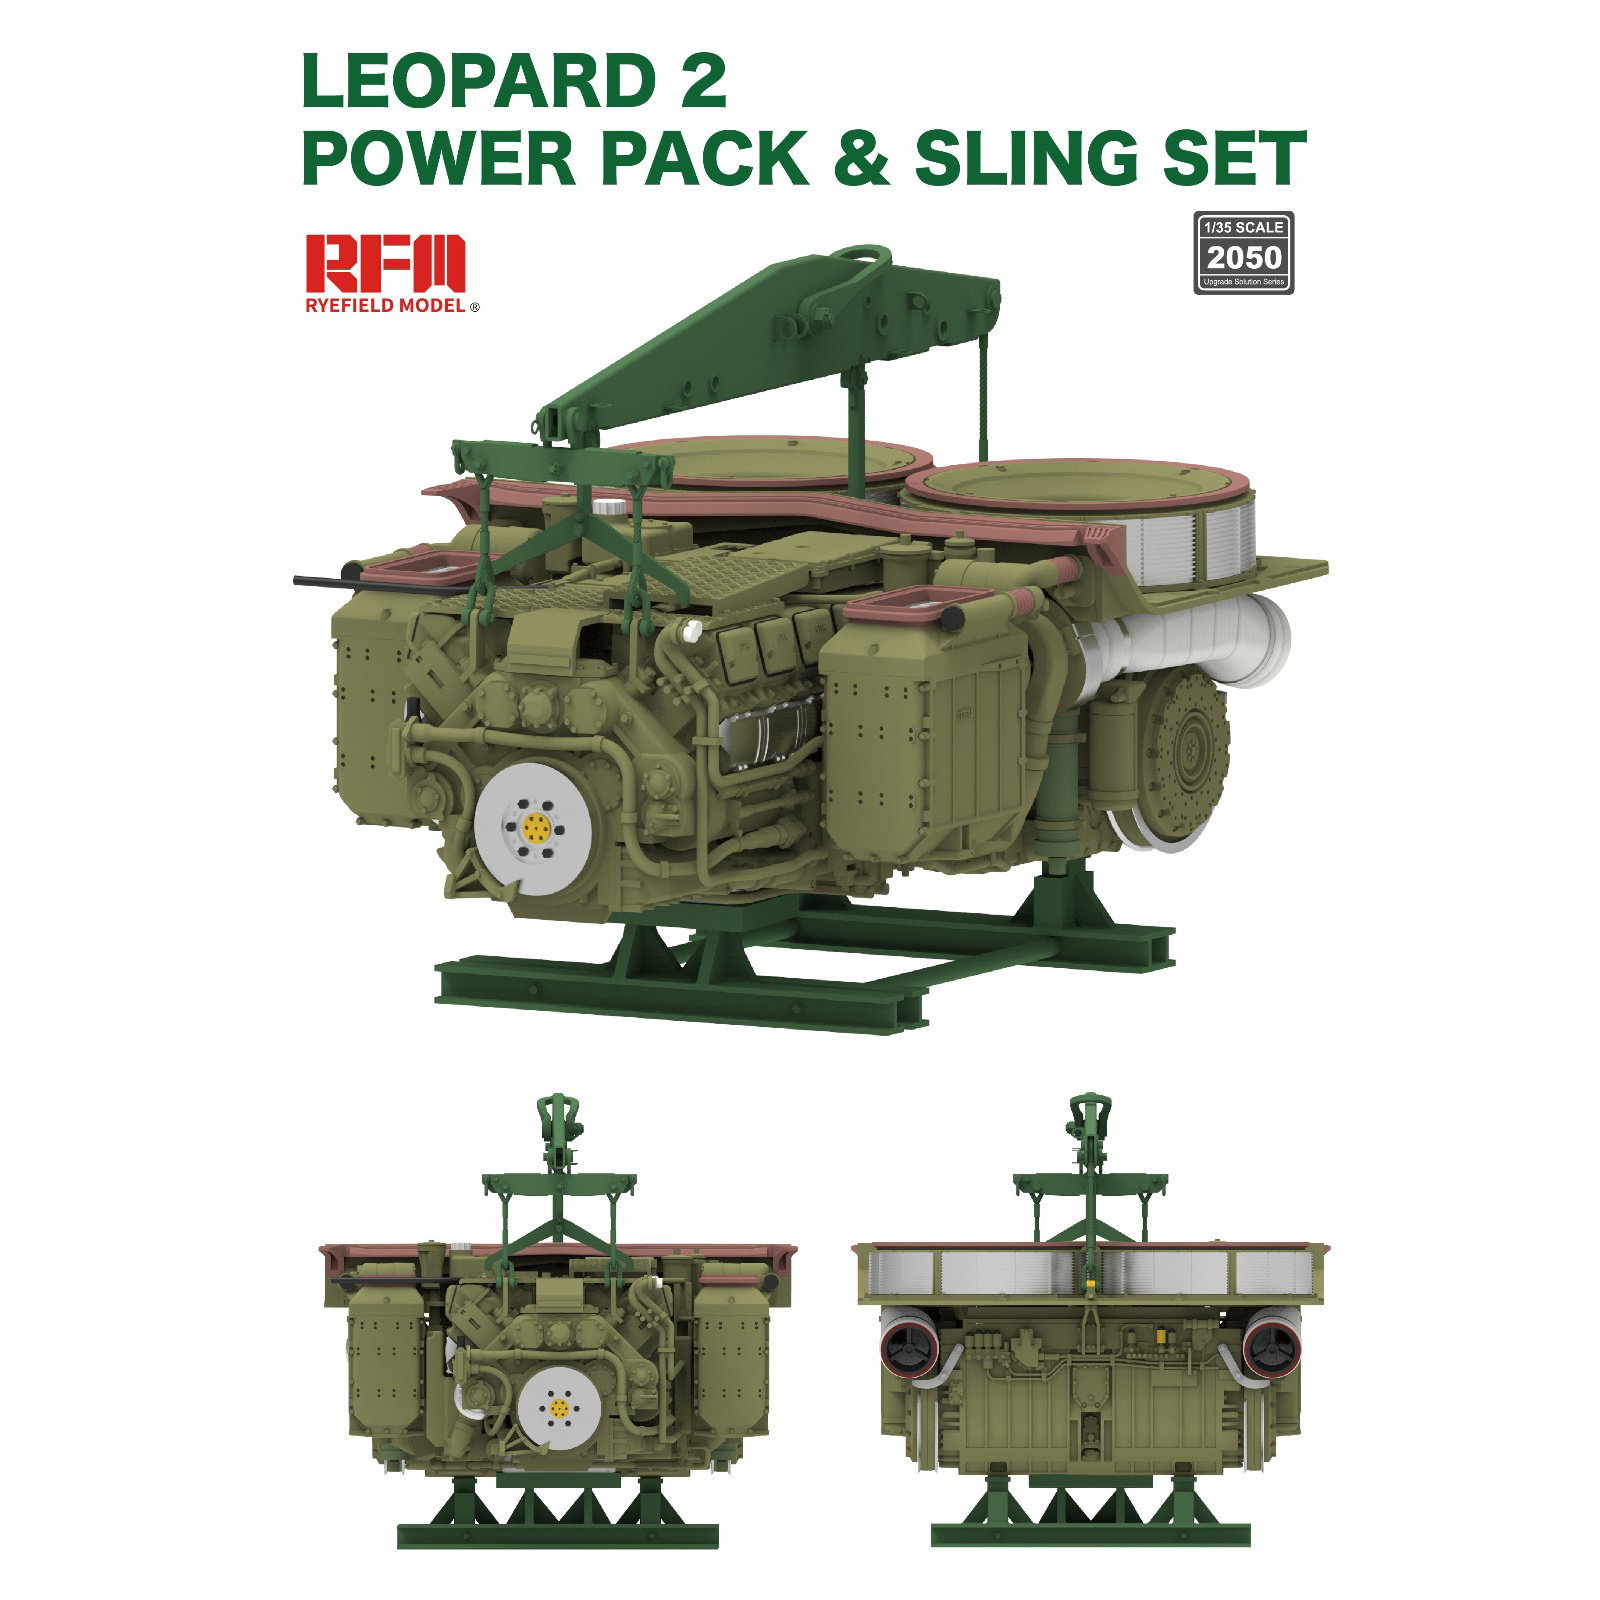 RM-2050 Rye Field Model 1/35 Add-on Kit for Leopard 2A6 Tank Model / Powerpack & Sling Set